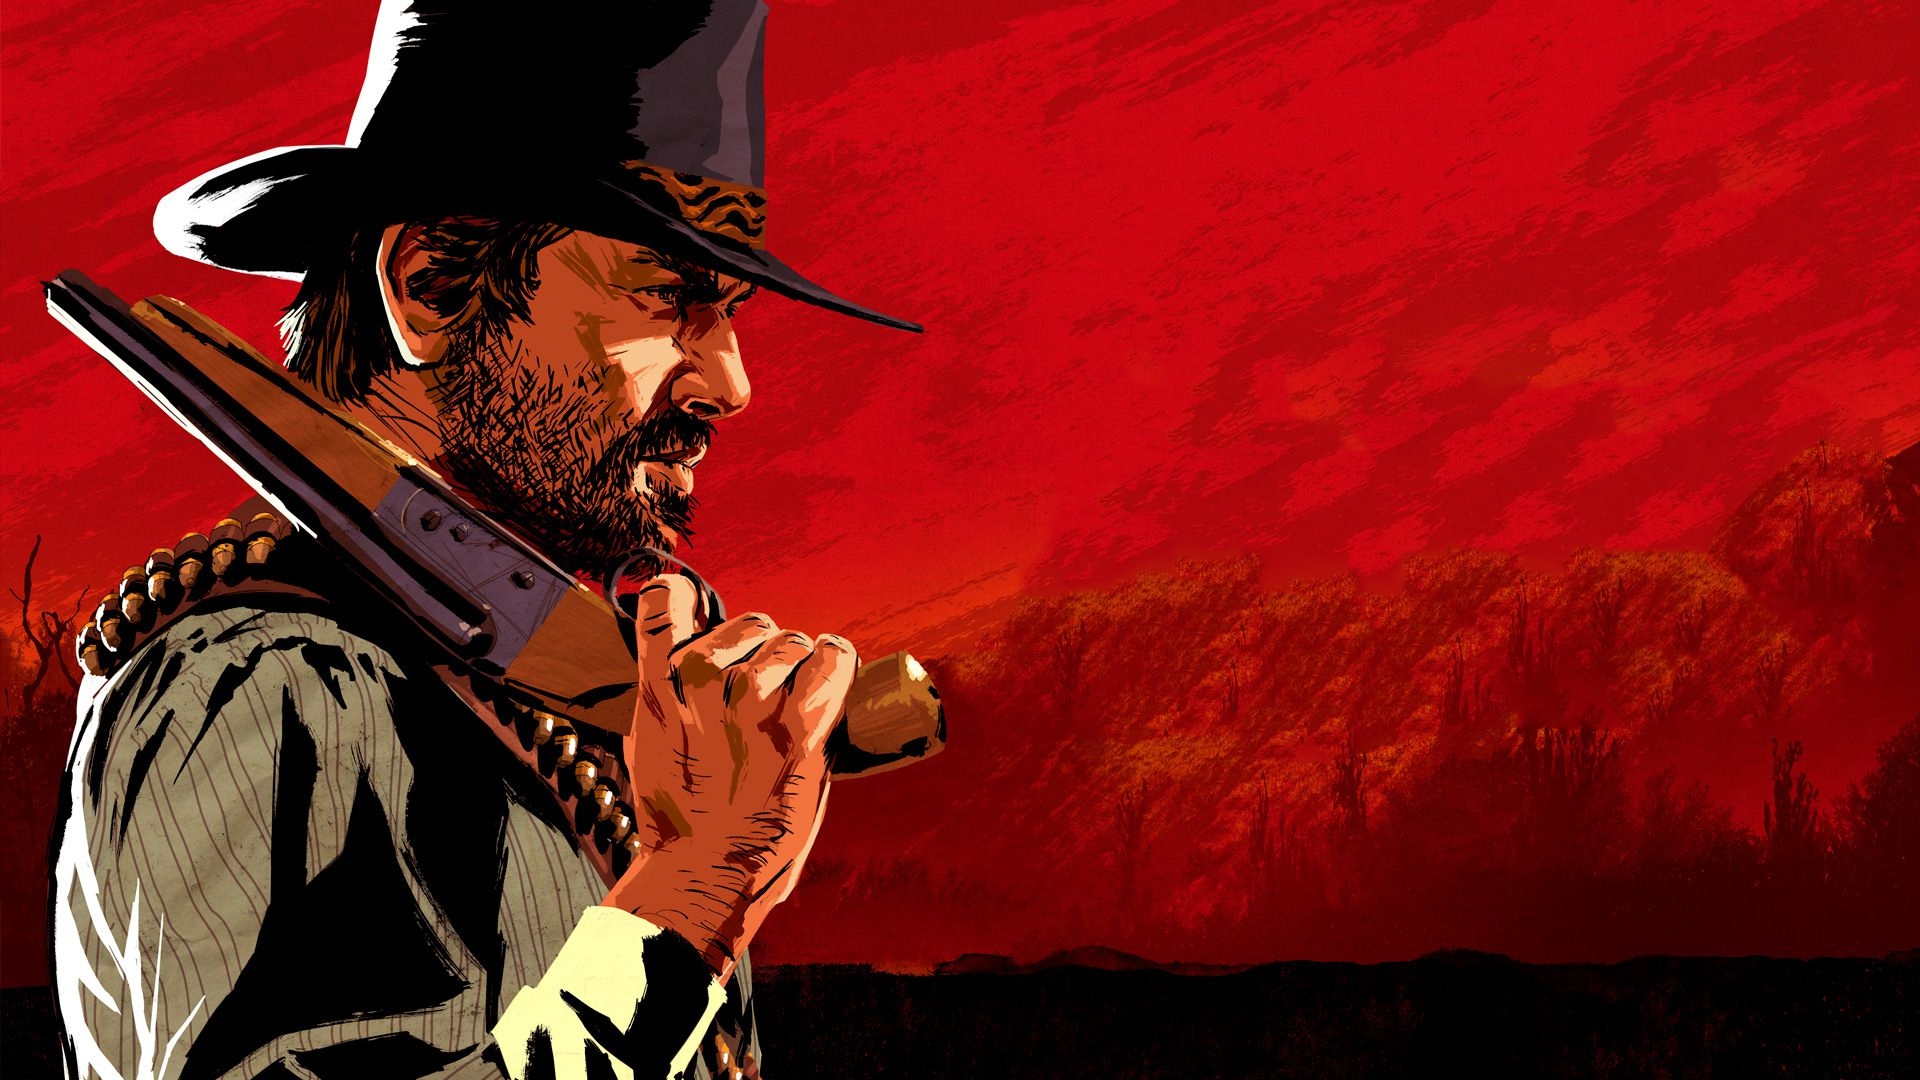 Will Rockstar make Red Dead Redemption 3?